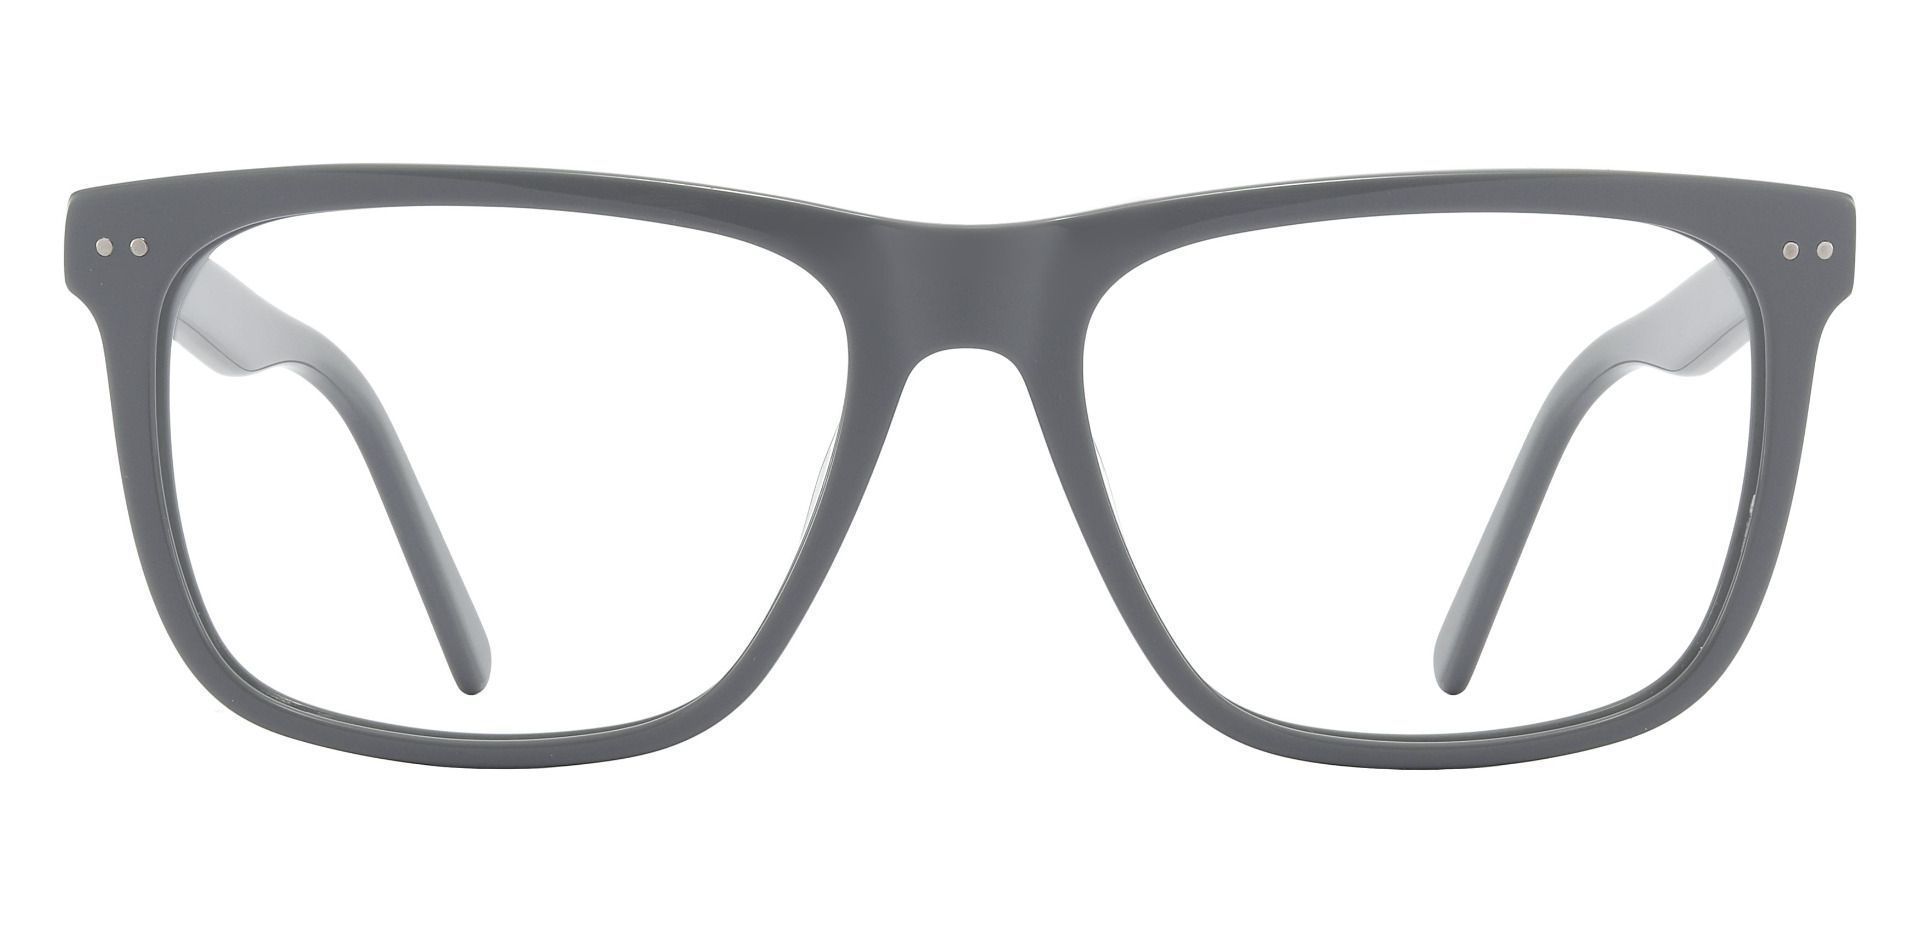 Barrington Rectangle Prescription Glasses - Gray | Men's Eyeglasses ...